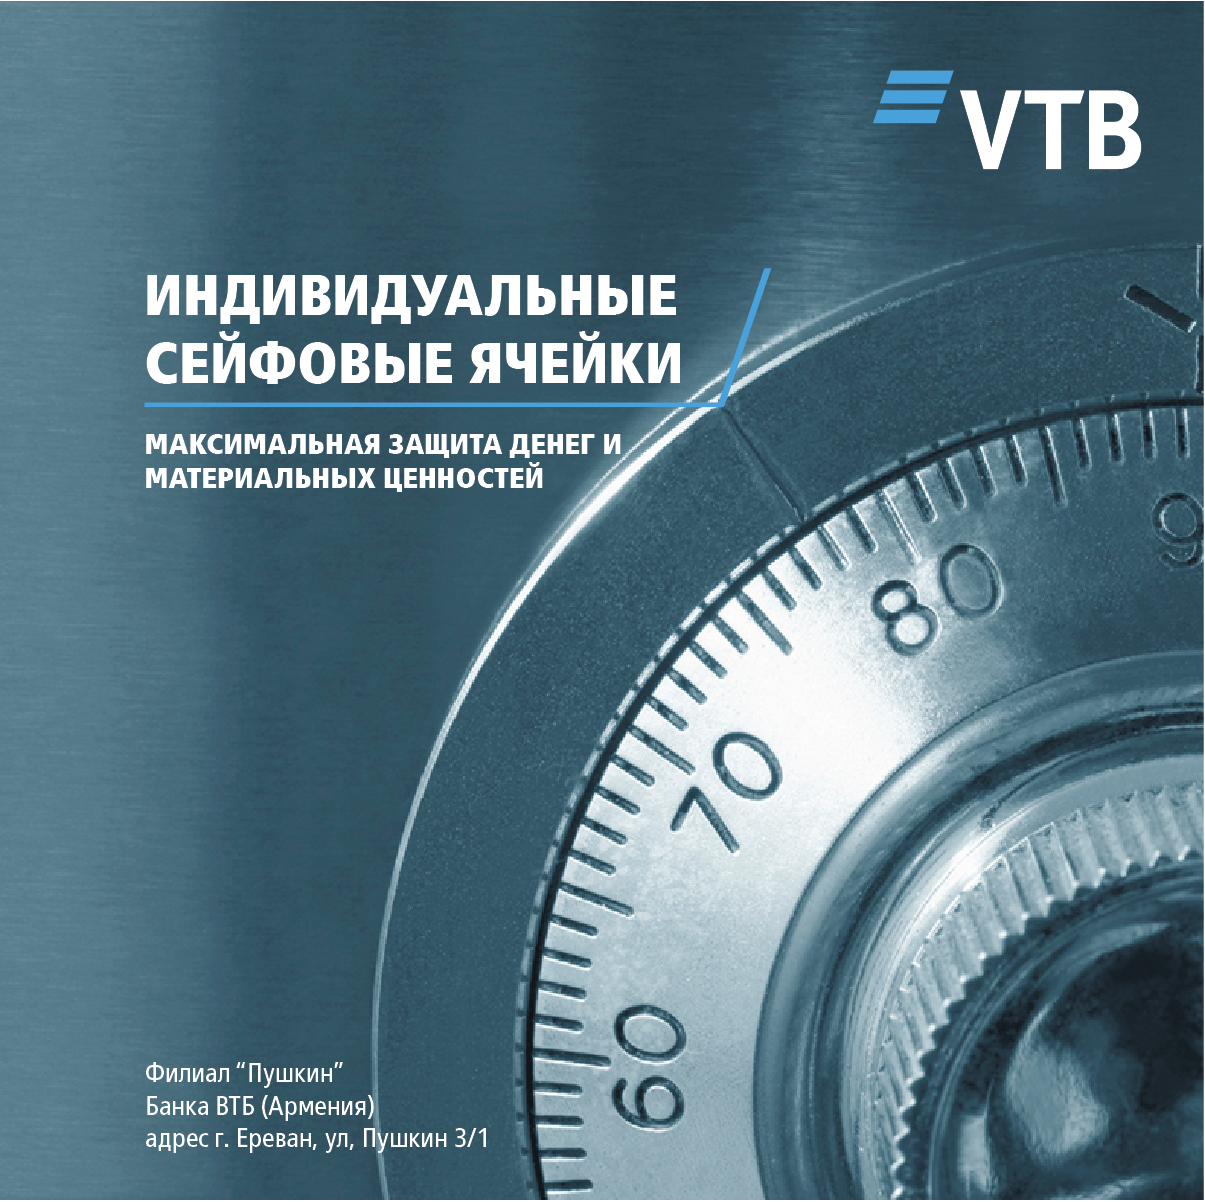 Банк ВТБ (Армения) предлагает своим клиентам воспользоваться индивидуальными сейфовыми ячейками